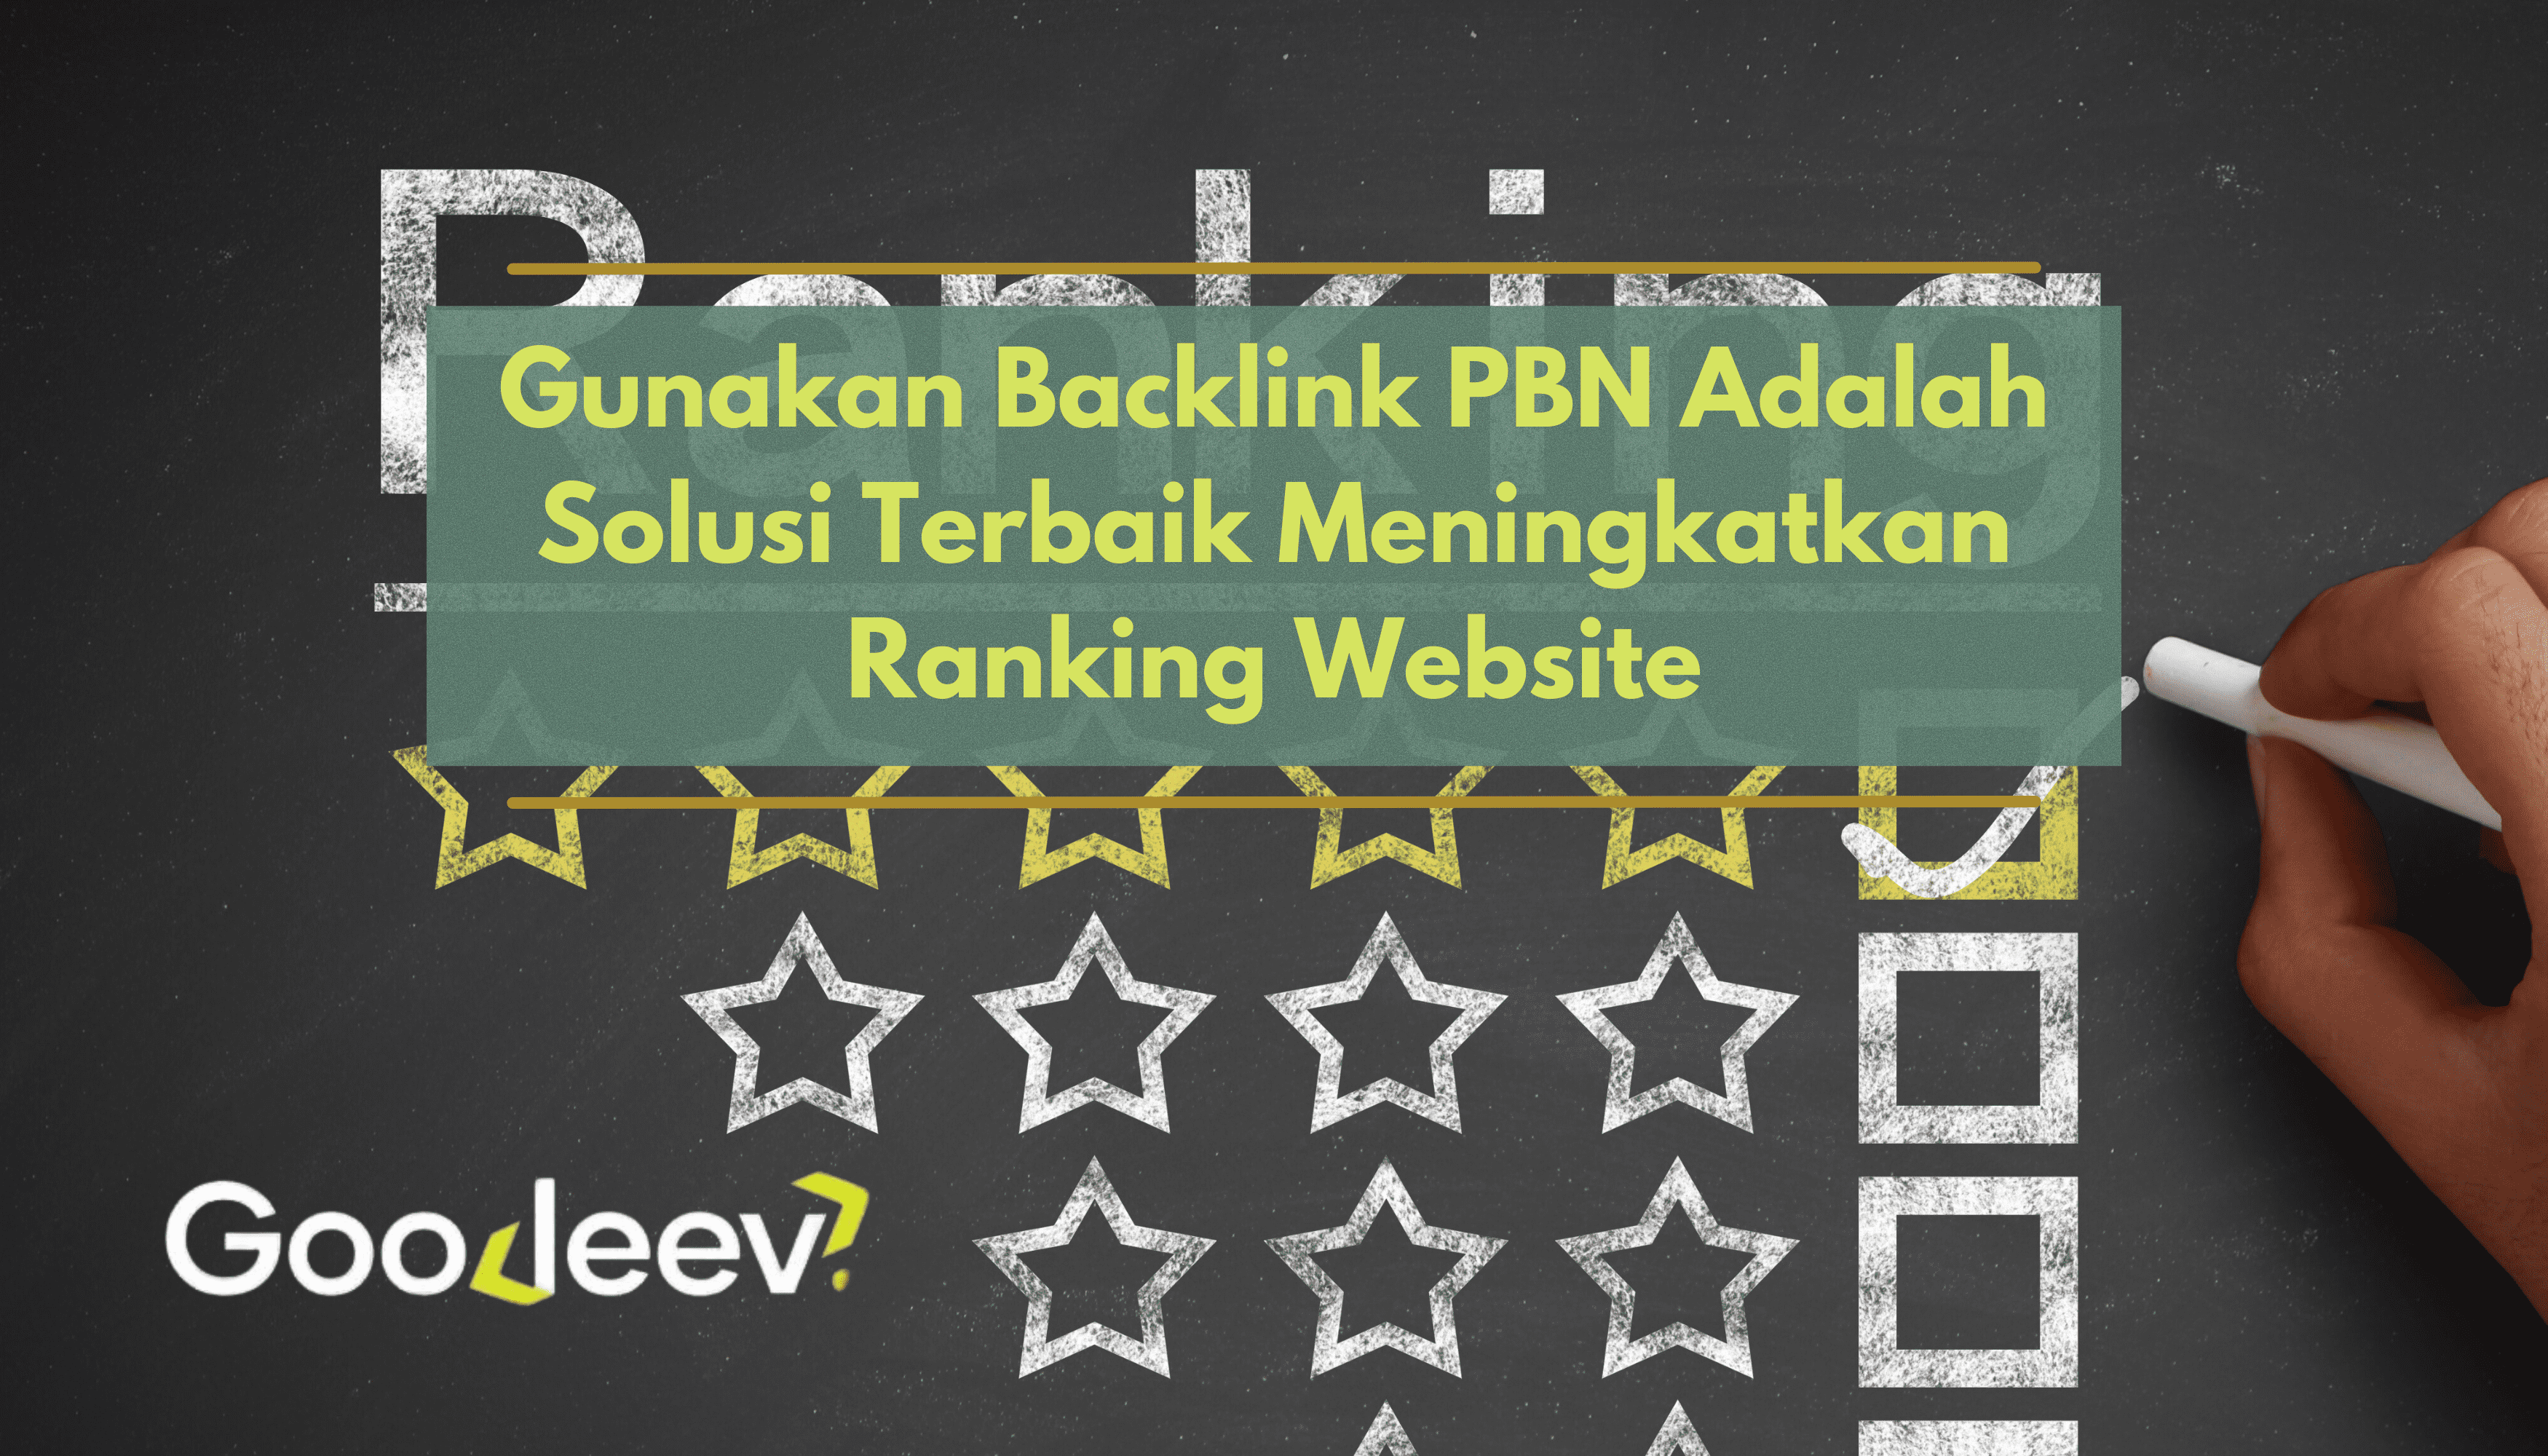 Gunakan Backlink PBN Adalah Solusi Terbaik Meningkatkan Ranking Website